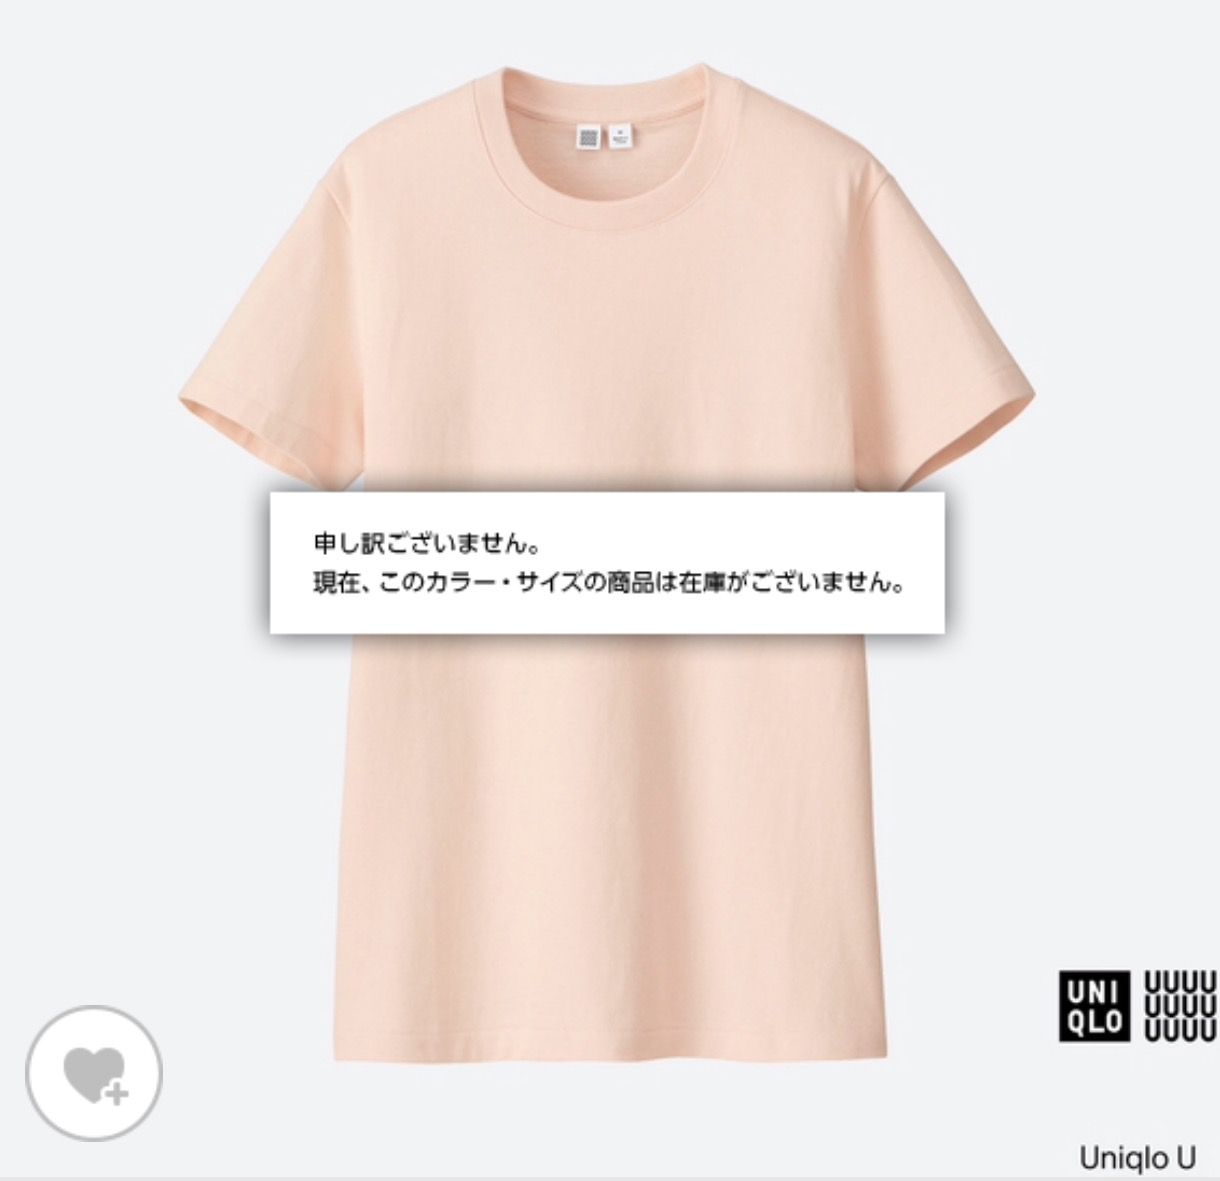 ユニクロ U ピンクtシャツ人気がすごいので感想とコーデをまとめた くらため帖